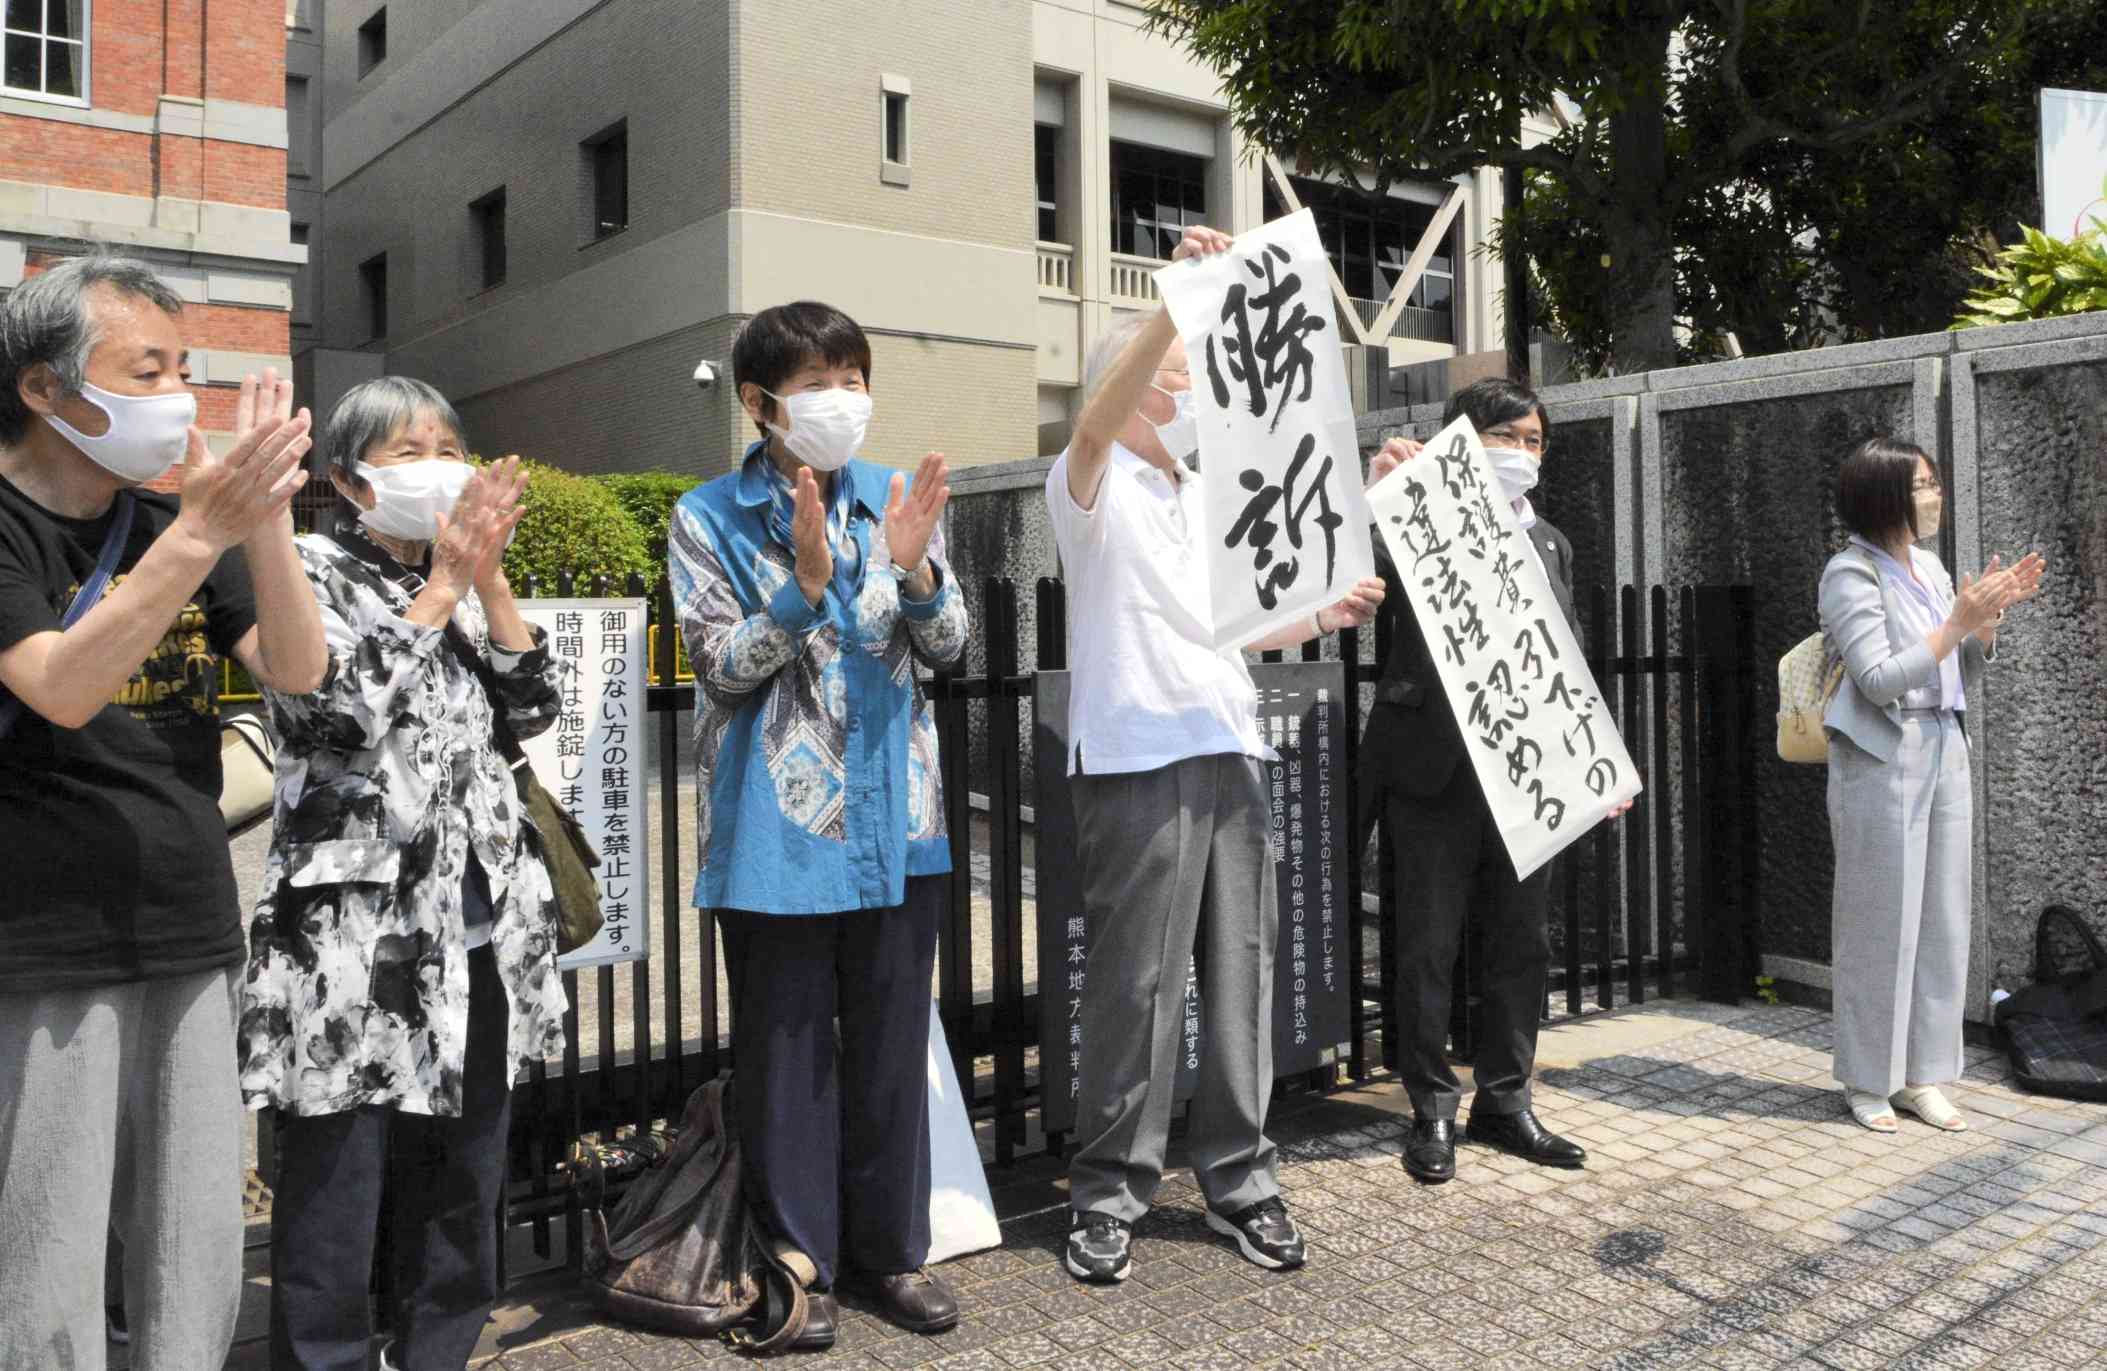 生活保護費の基準額引き下げは違法と認めた判決後、「勝訴」の垂れ幕を掲げて喜ぶ原告ら＝25日、熊本市中央区の熊本地裁前